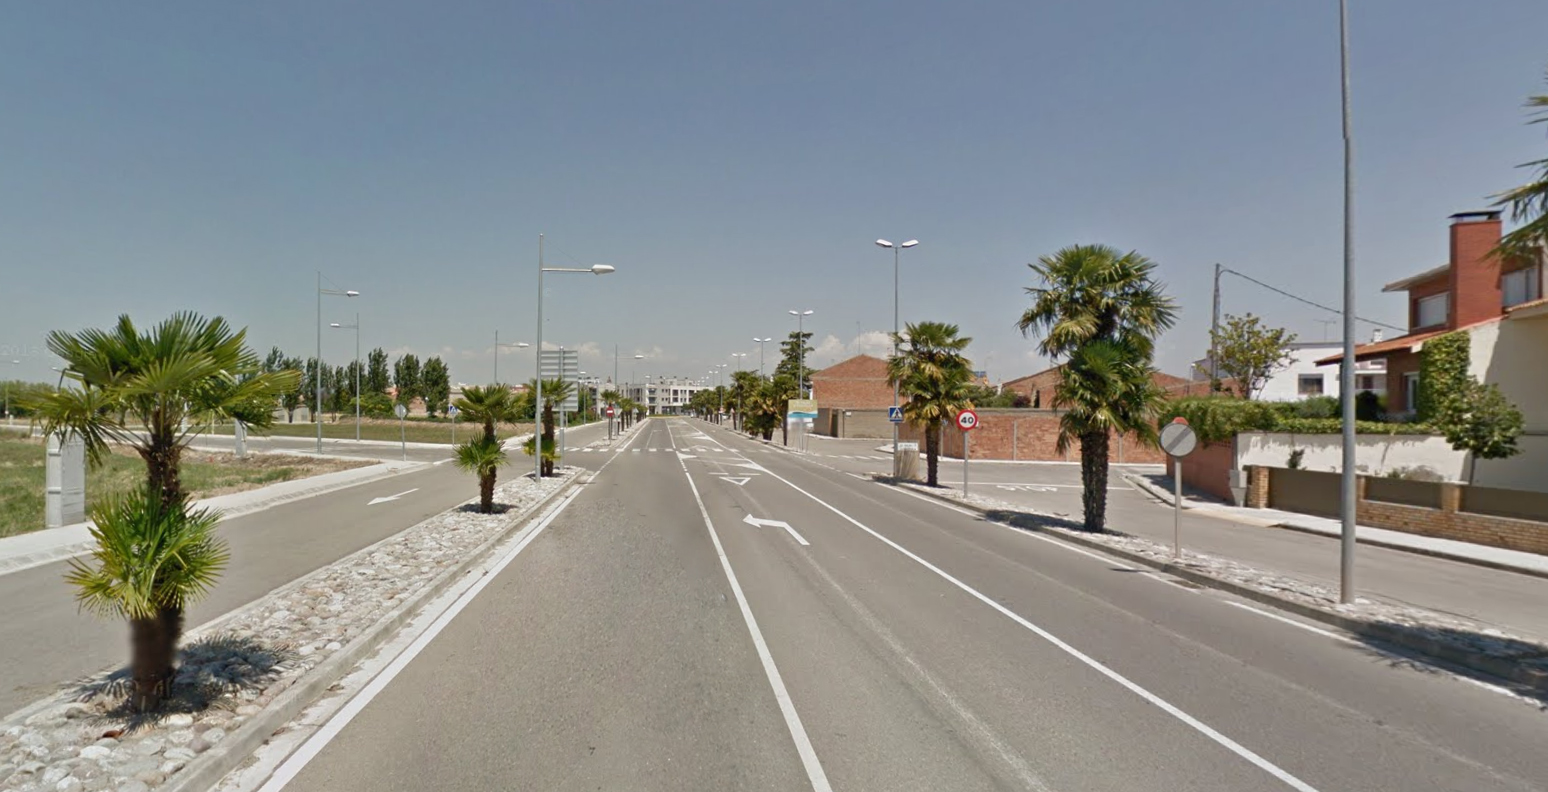 Les obres de millora dels carrers Verge de Montserrat i Urgell del Palau d’Anglesola s’inicien aquest dimecres